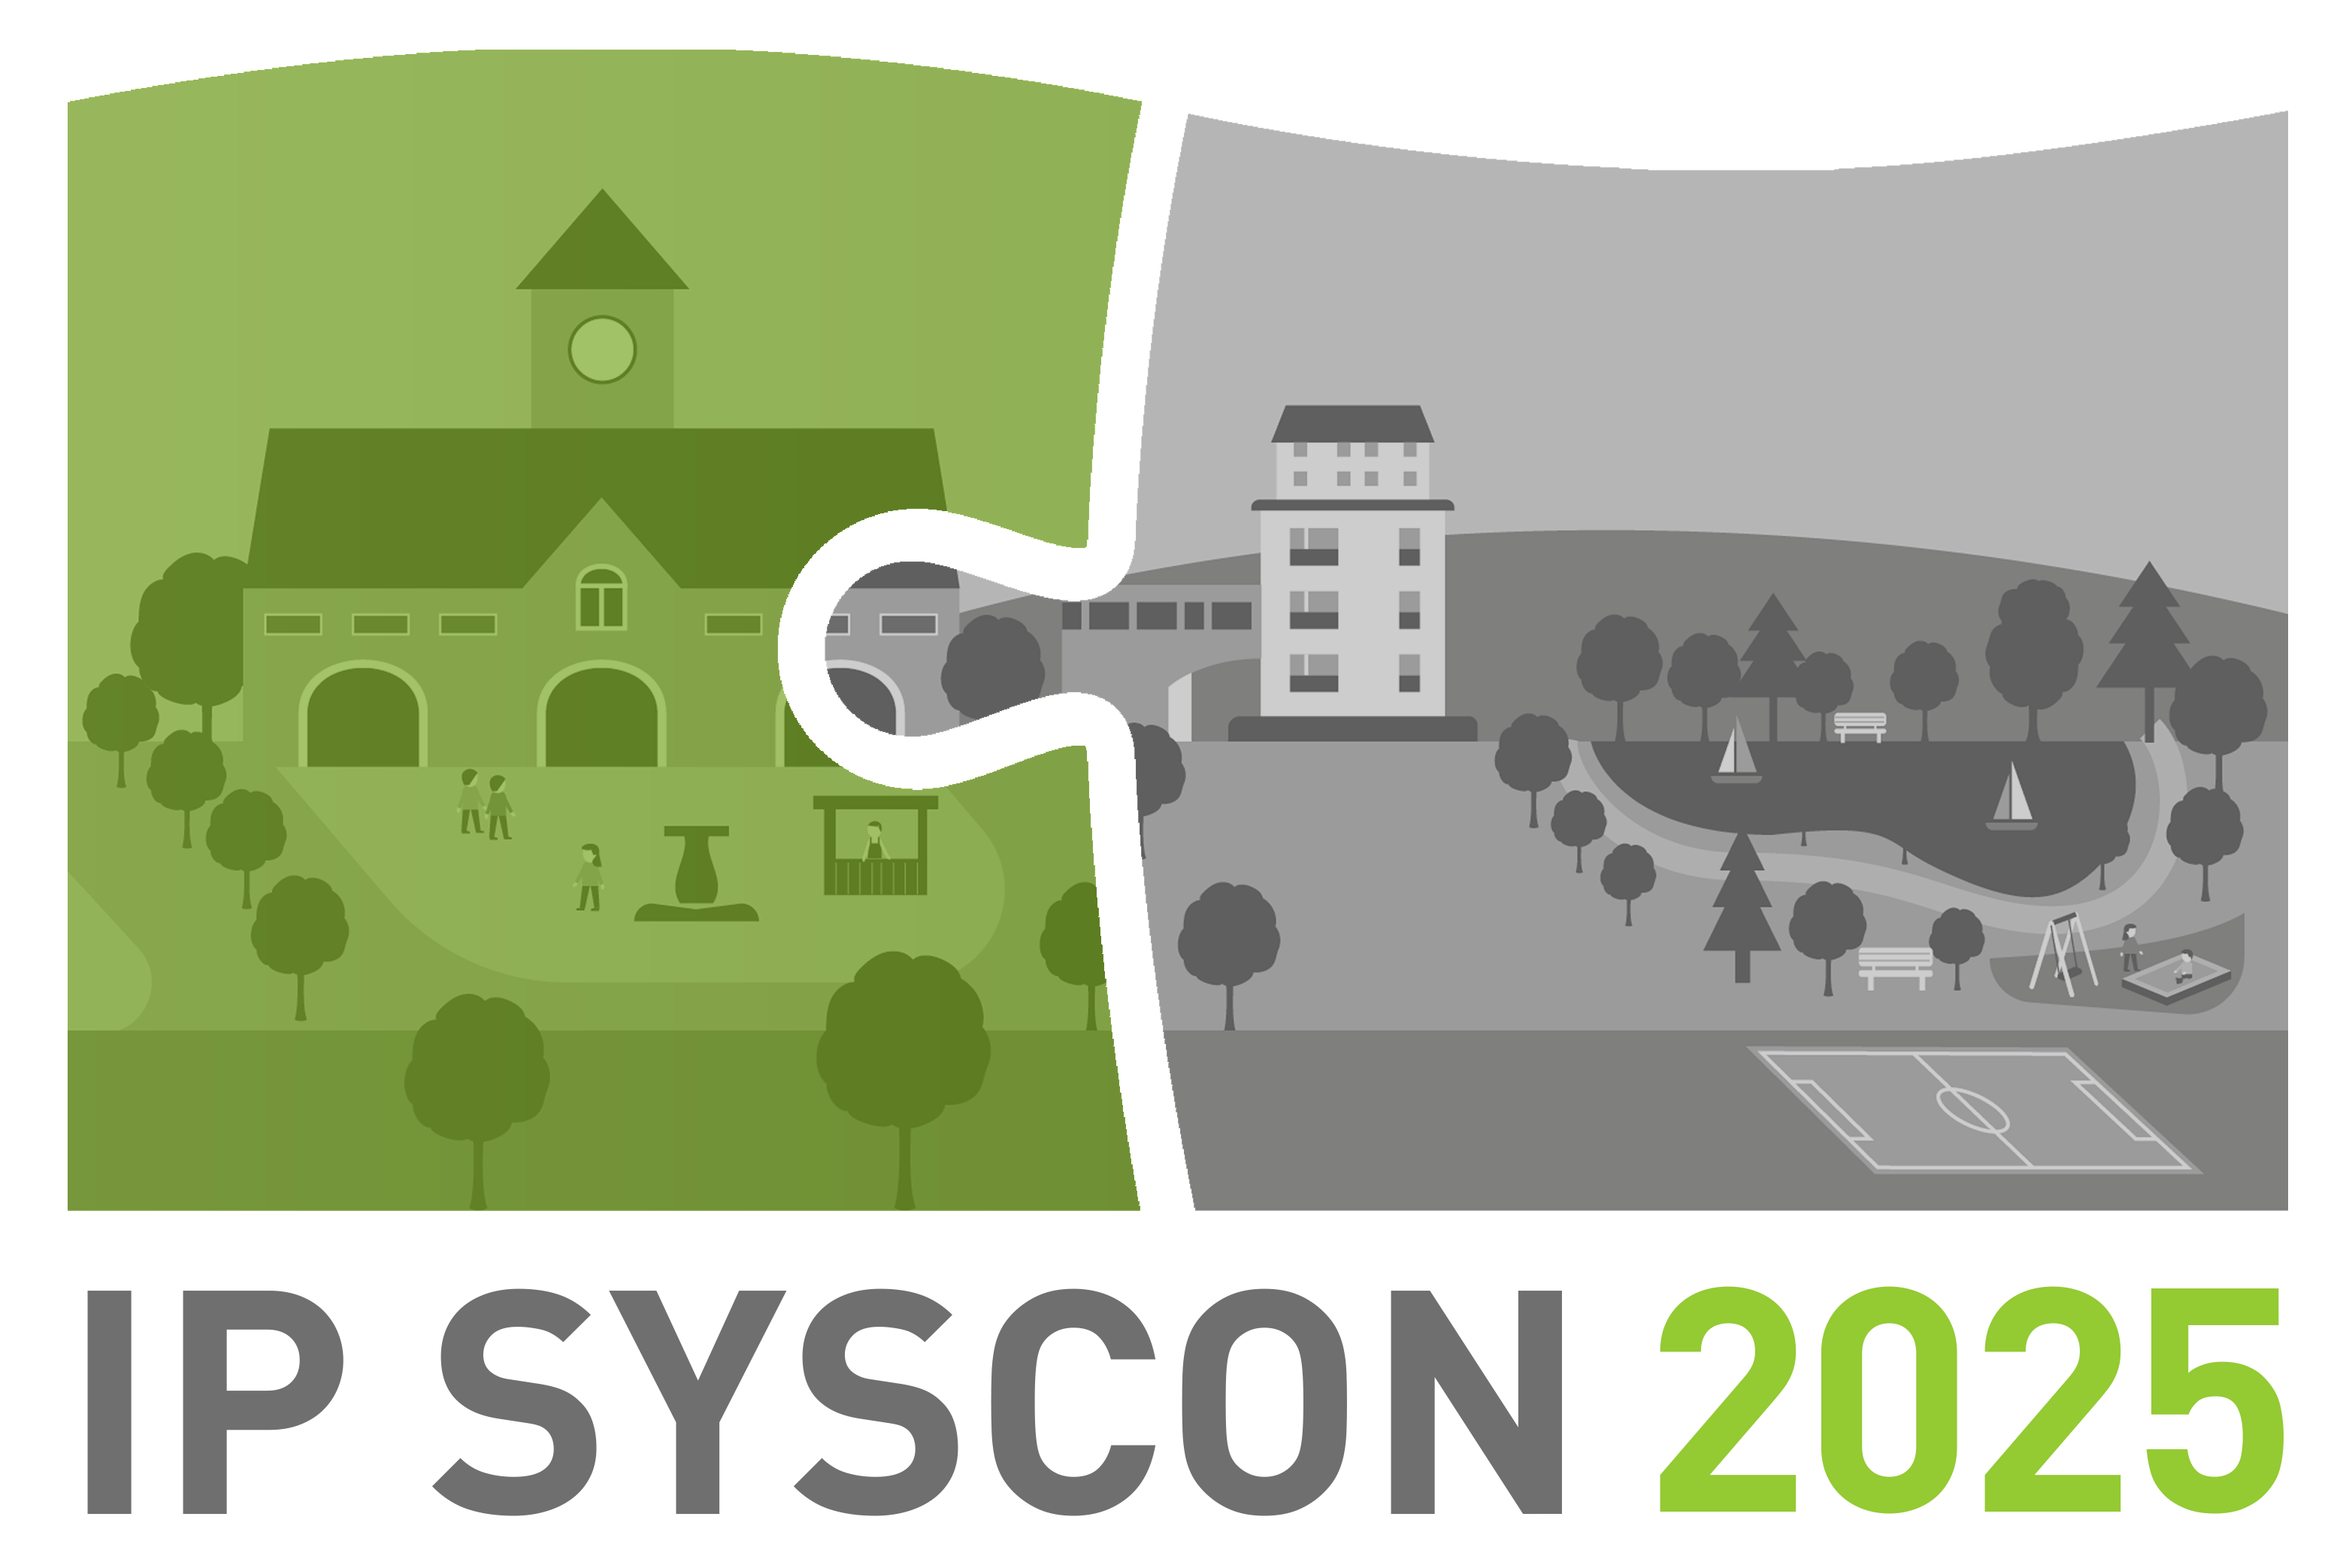 IP SYSCON 2025